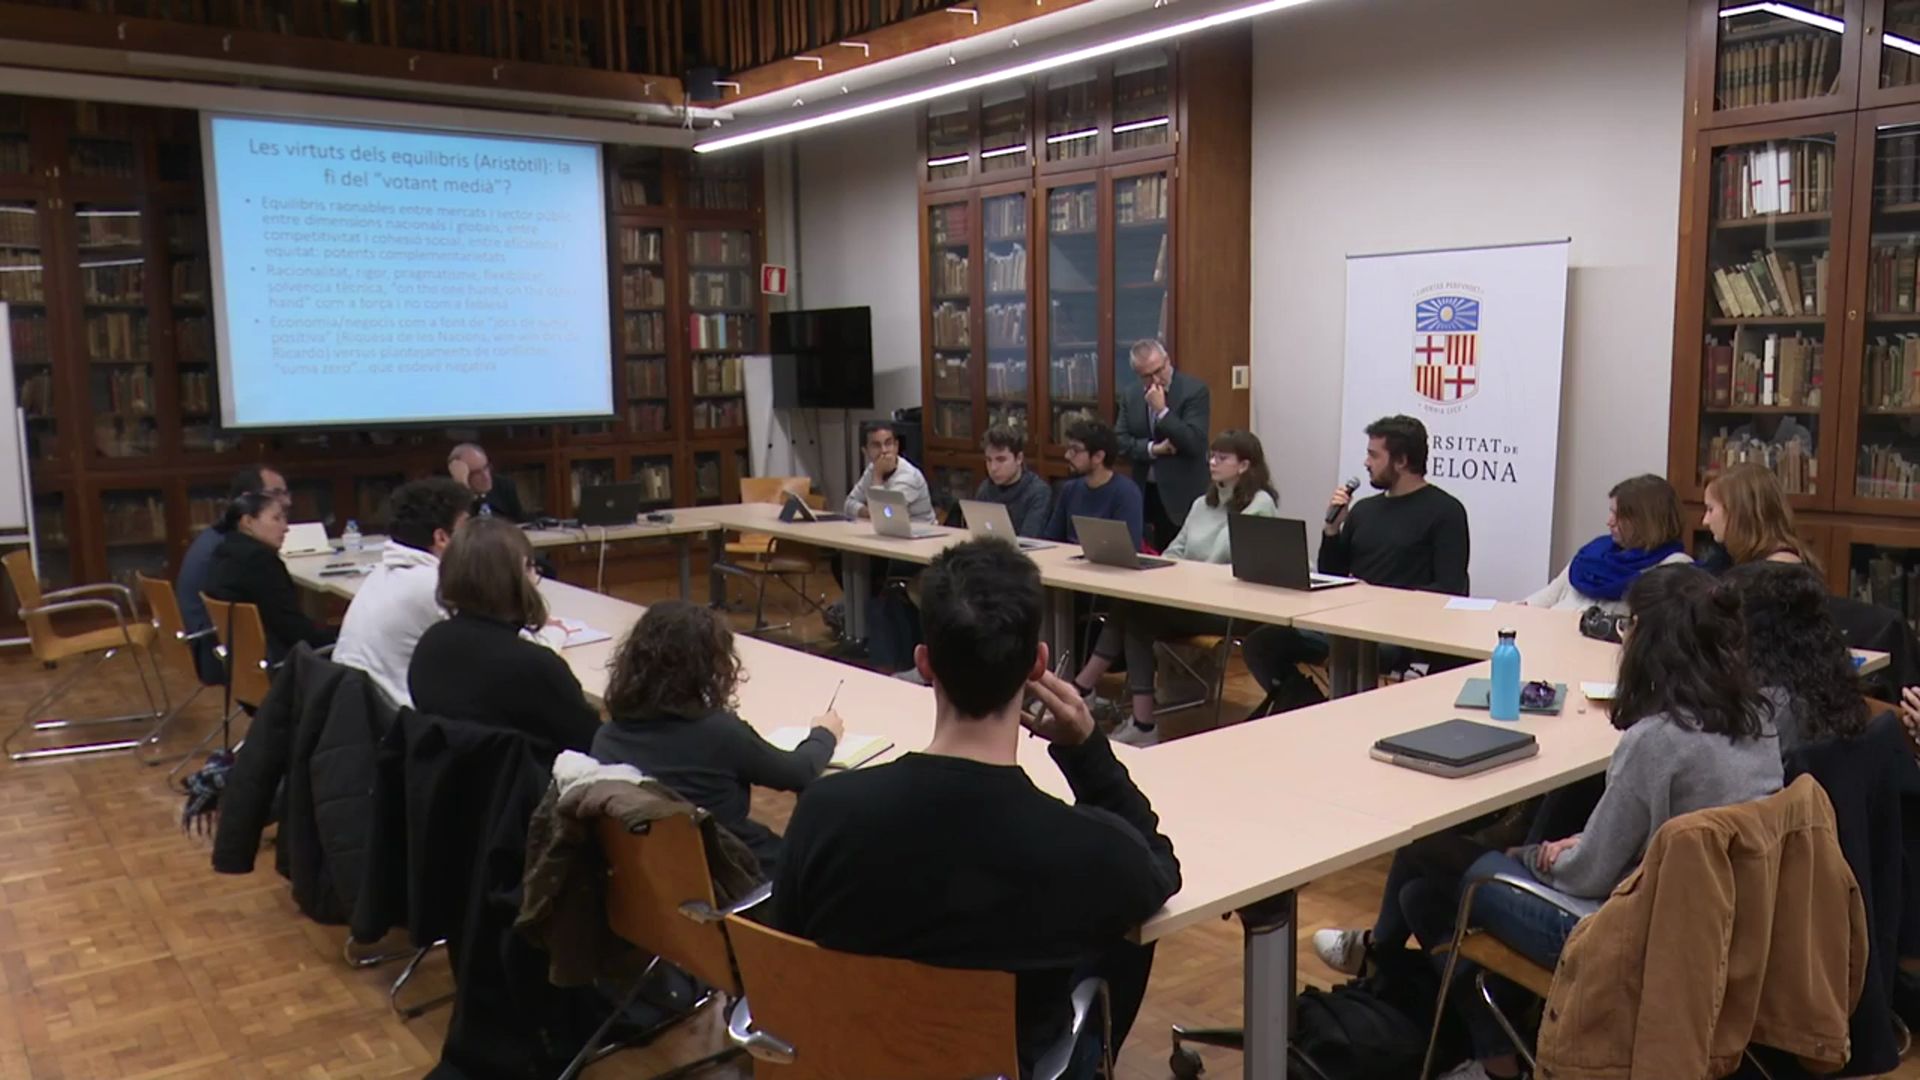 Diàlegs a la Ramón y Cajal - Sessió 2: “Fragilitats i Turbulències a l'Economia Global” - Joan Tugores